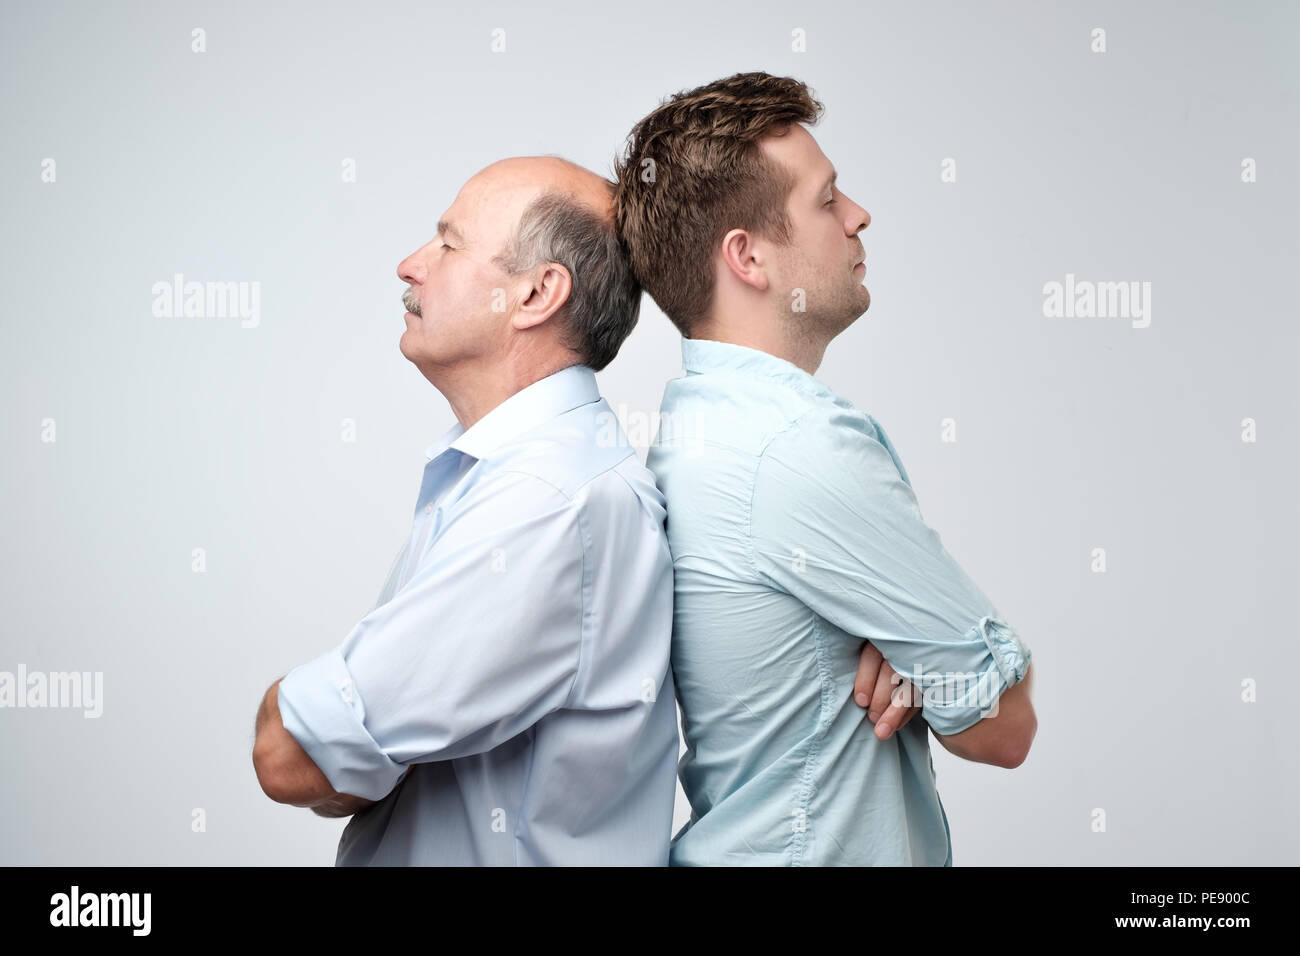 Seitliche Sicht auf zwei ernste Männer Vater und Sohn zurück, gegen einen weißen Hintergrund zu rücken. Streit oder Ärger Konzept Stockfoto